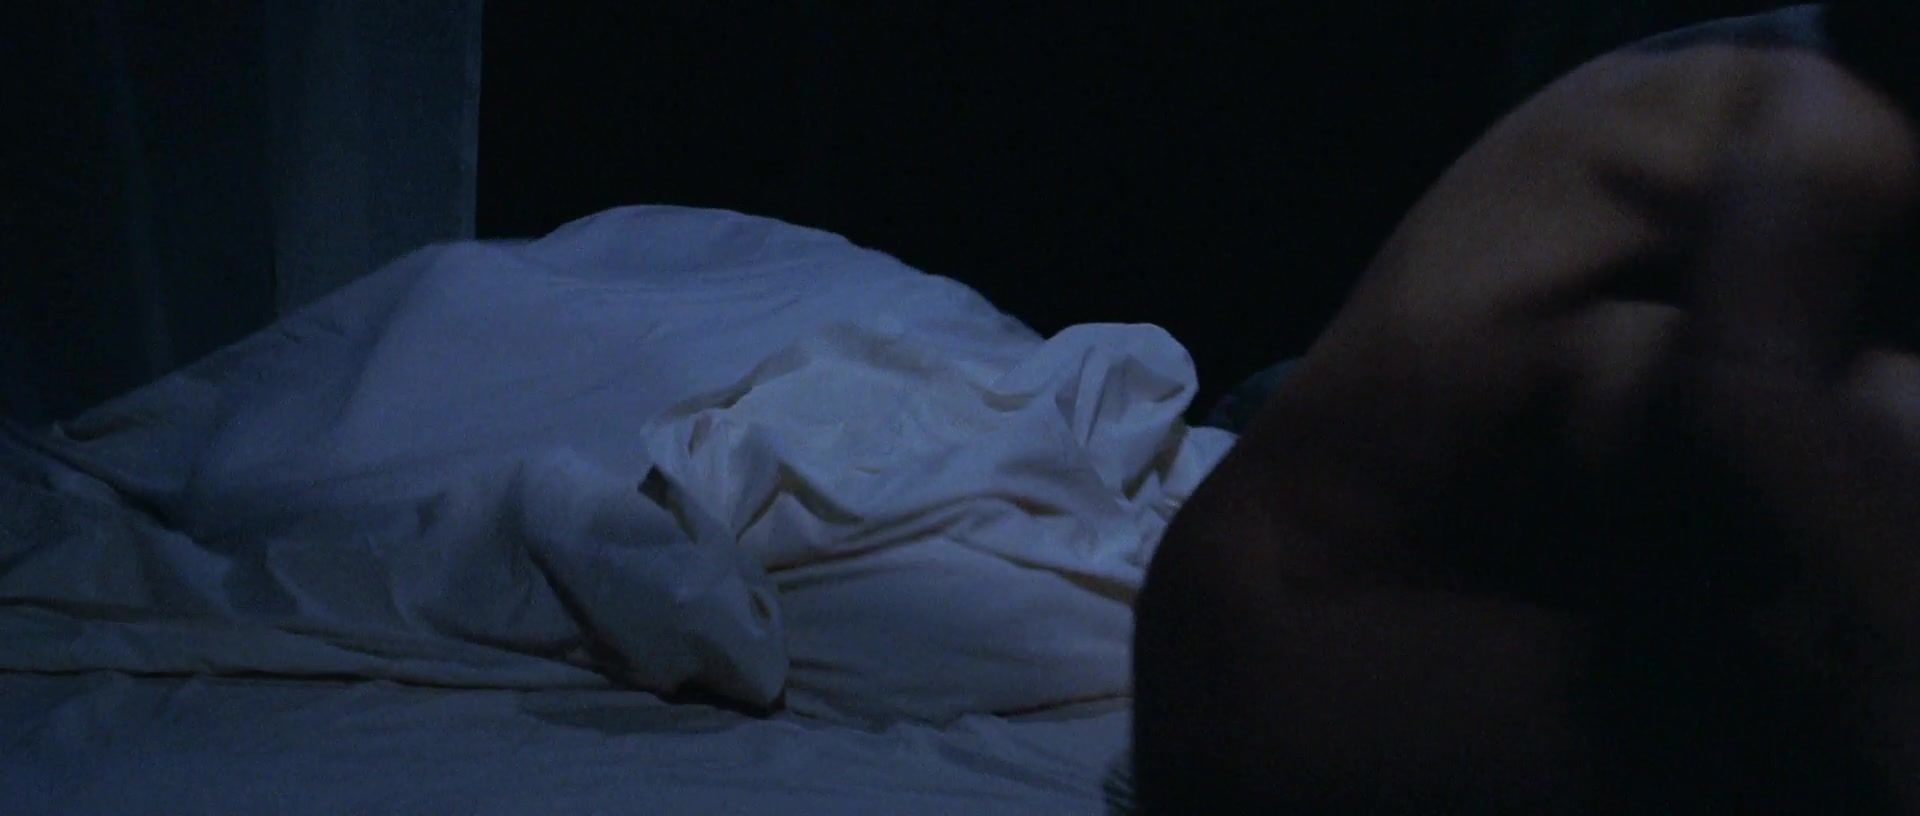 Orgy Marion Cotillard nude - Taxi (1998) Putaria - 1